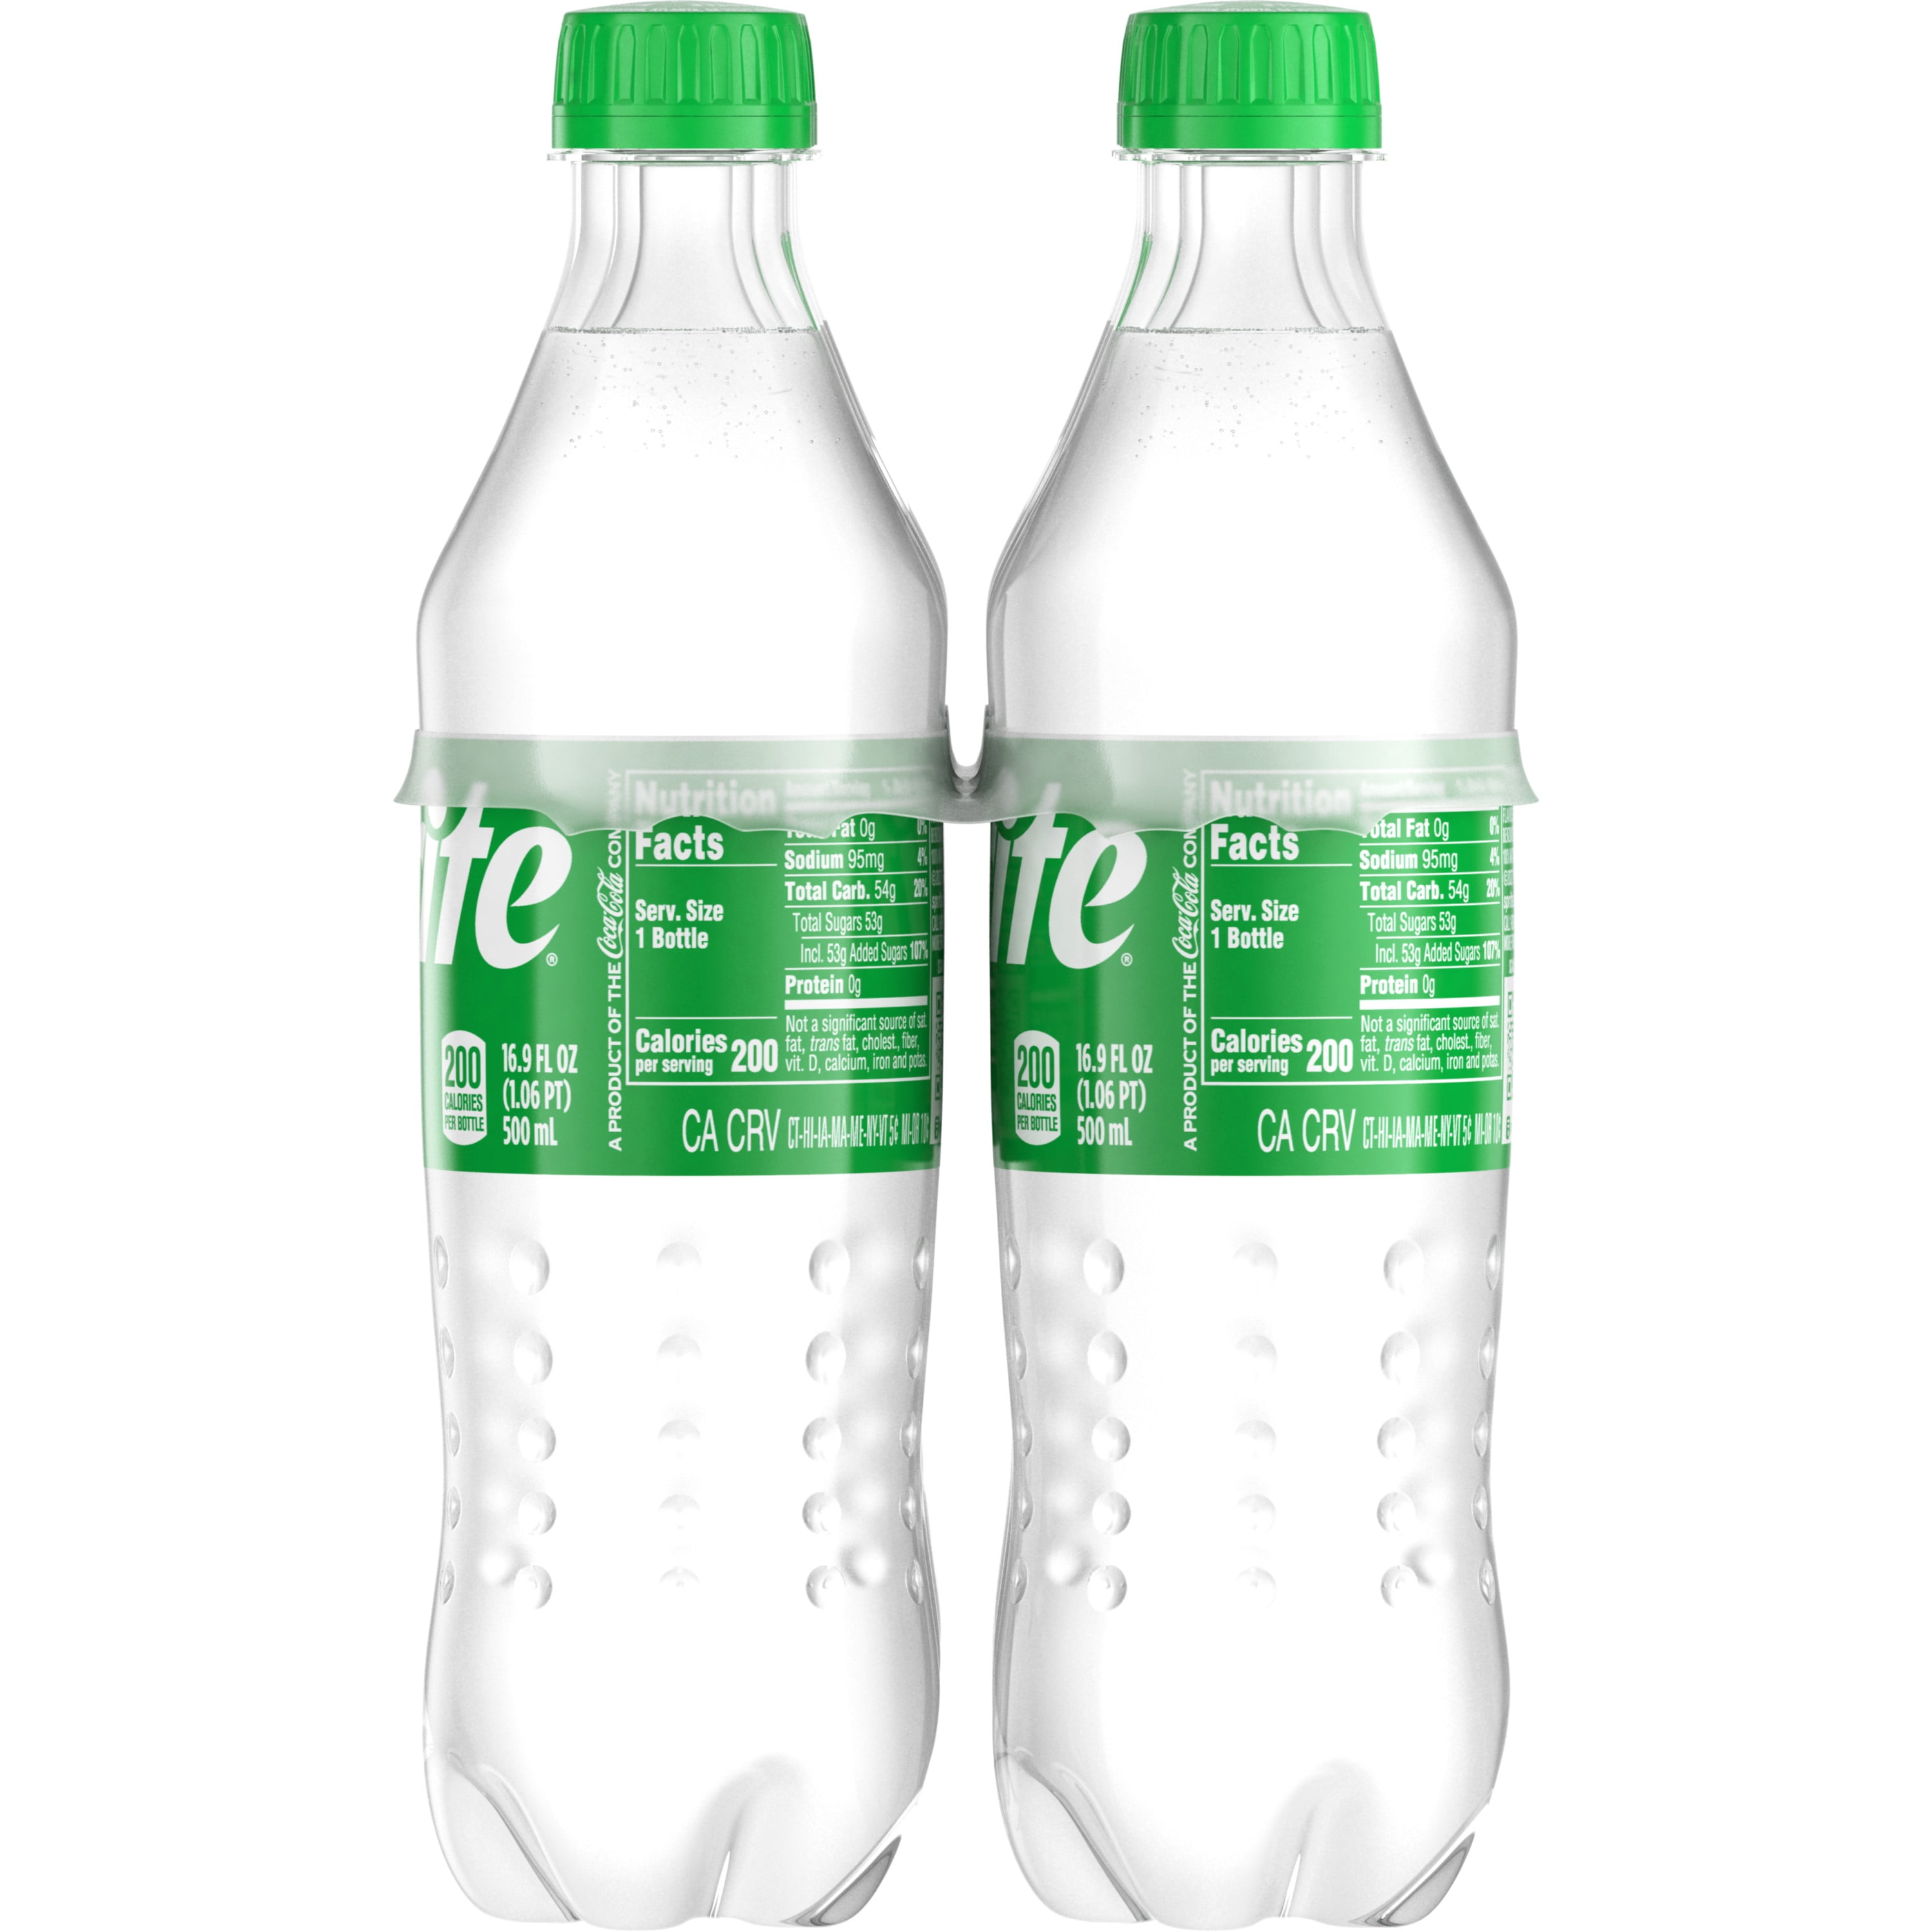 Sprite Zero Sugar Bottles, 16.9 fl oz, 6 Pack - The Fresh Grocer